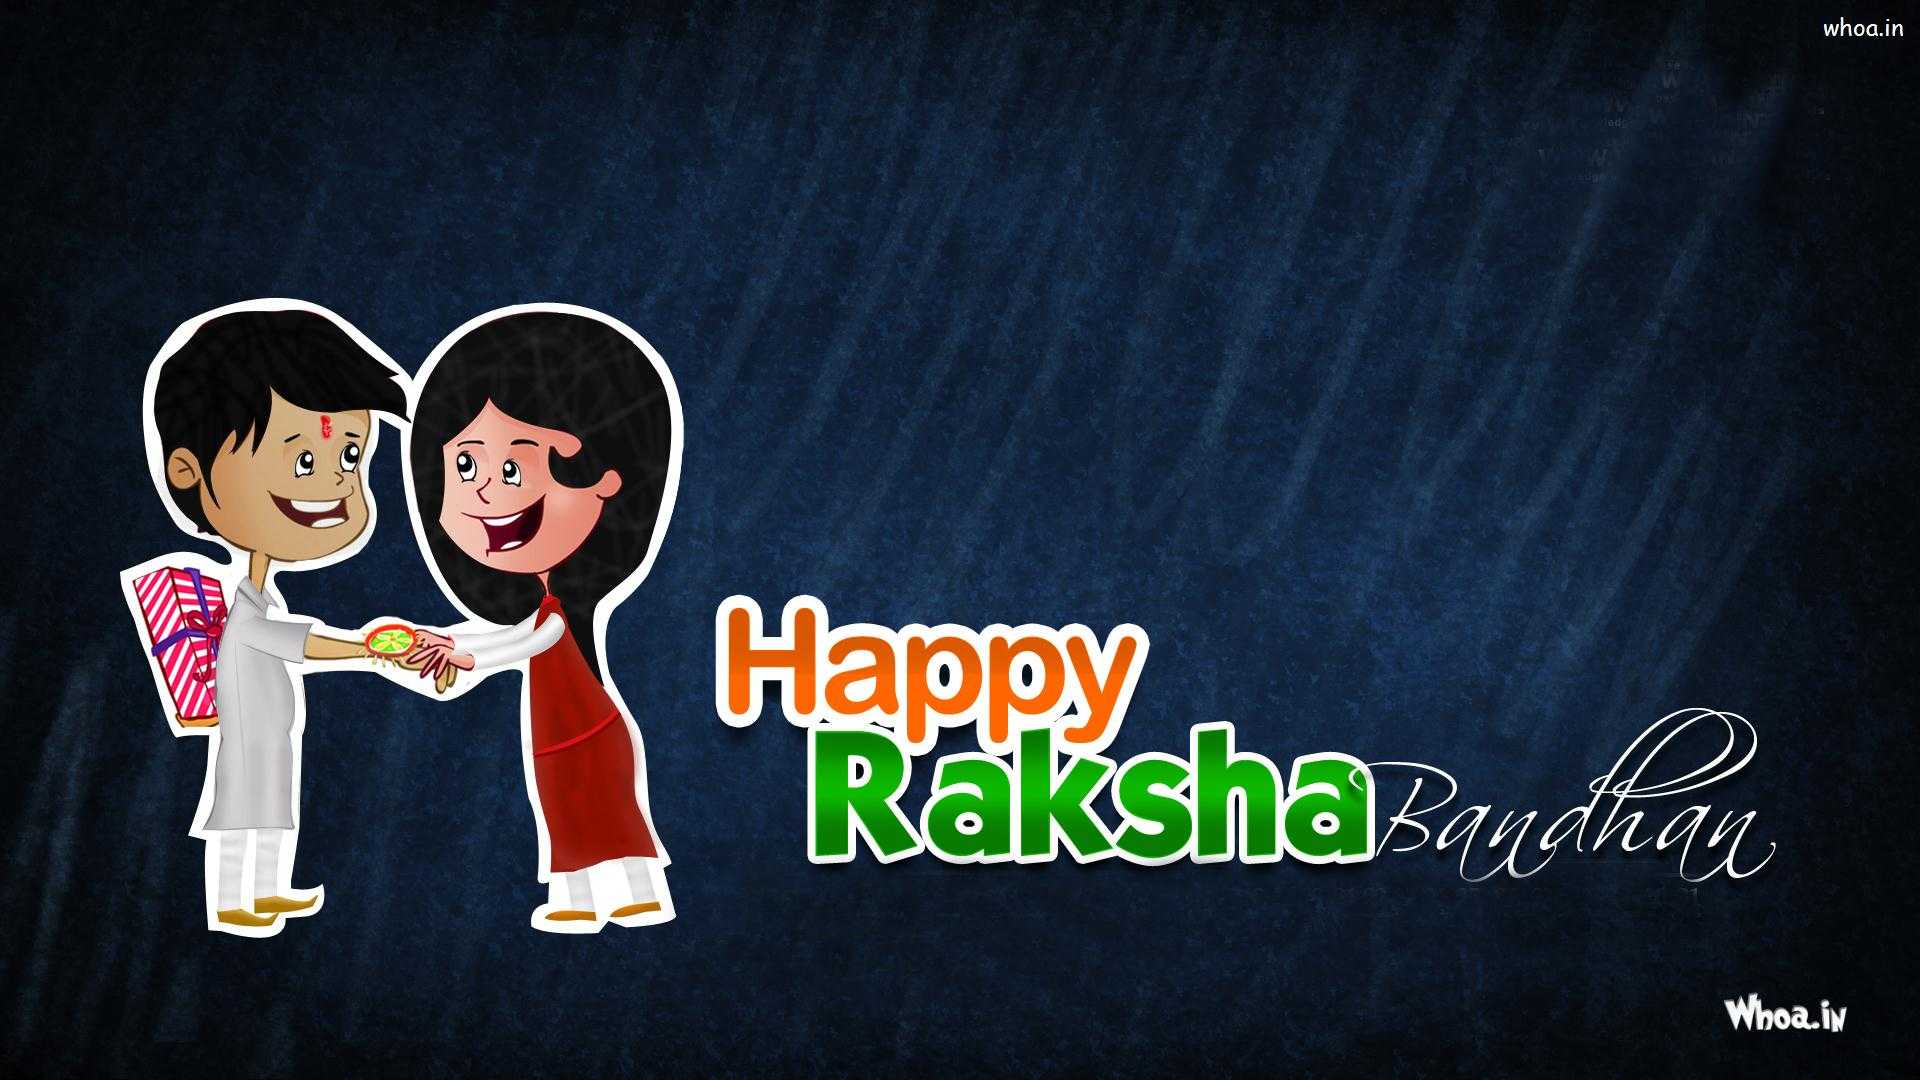 Raksha Bandhan Animated Pictures